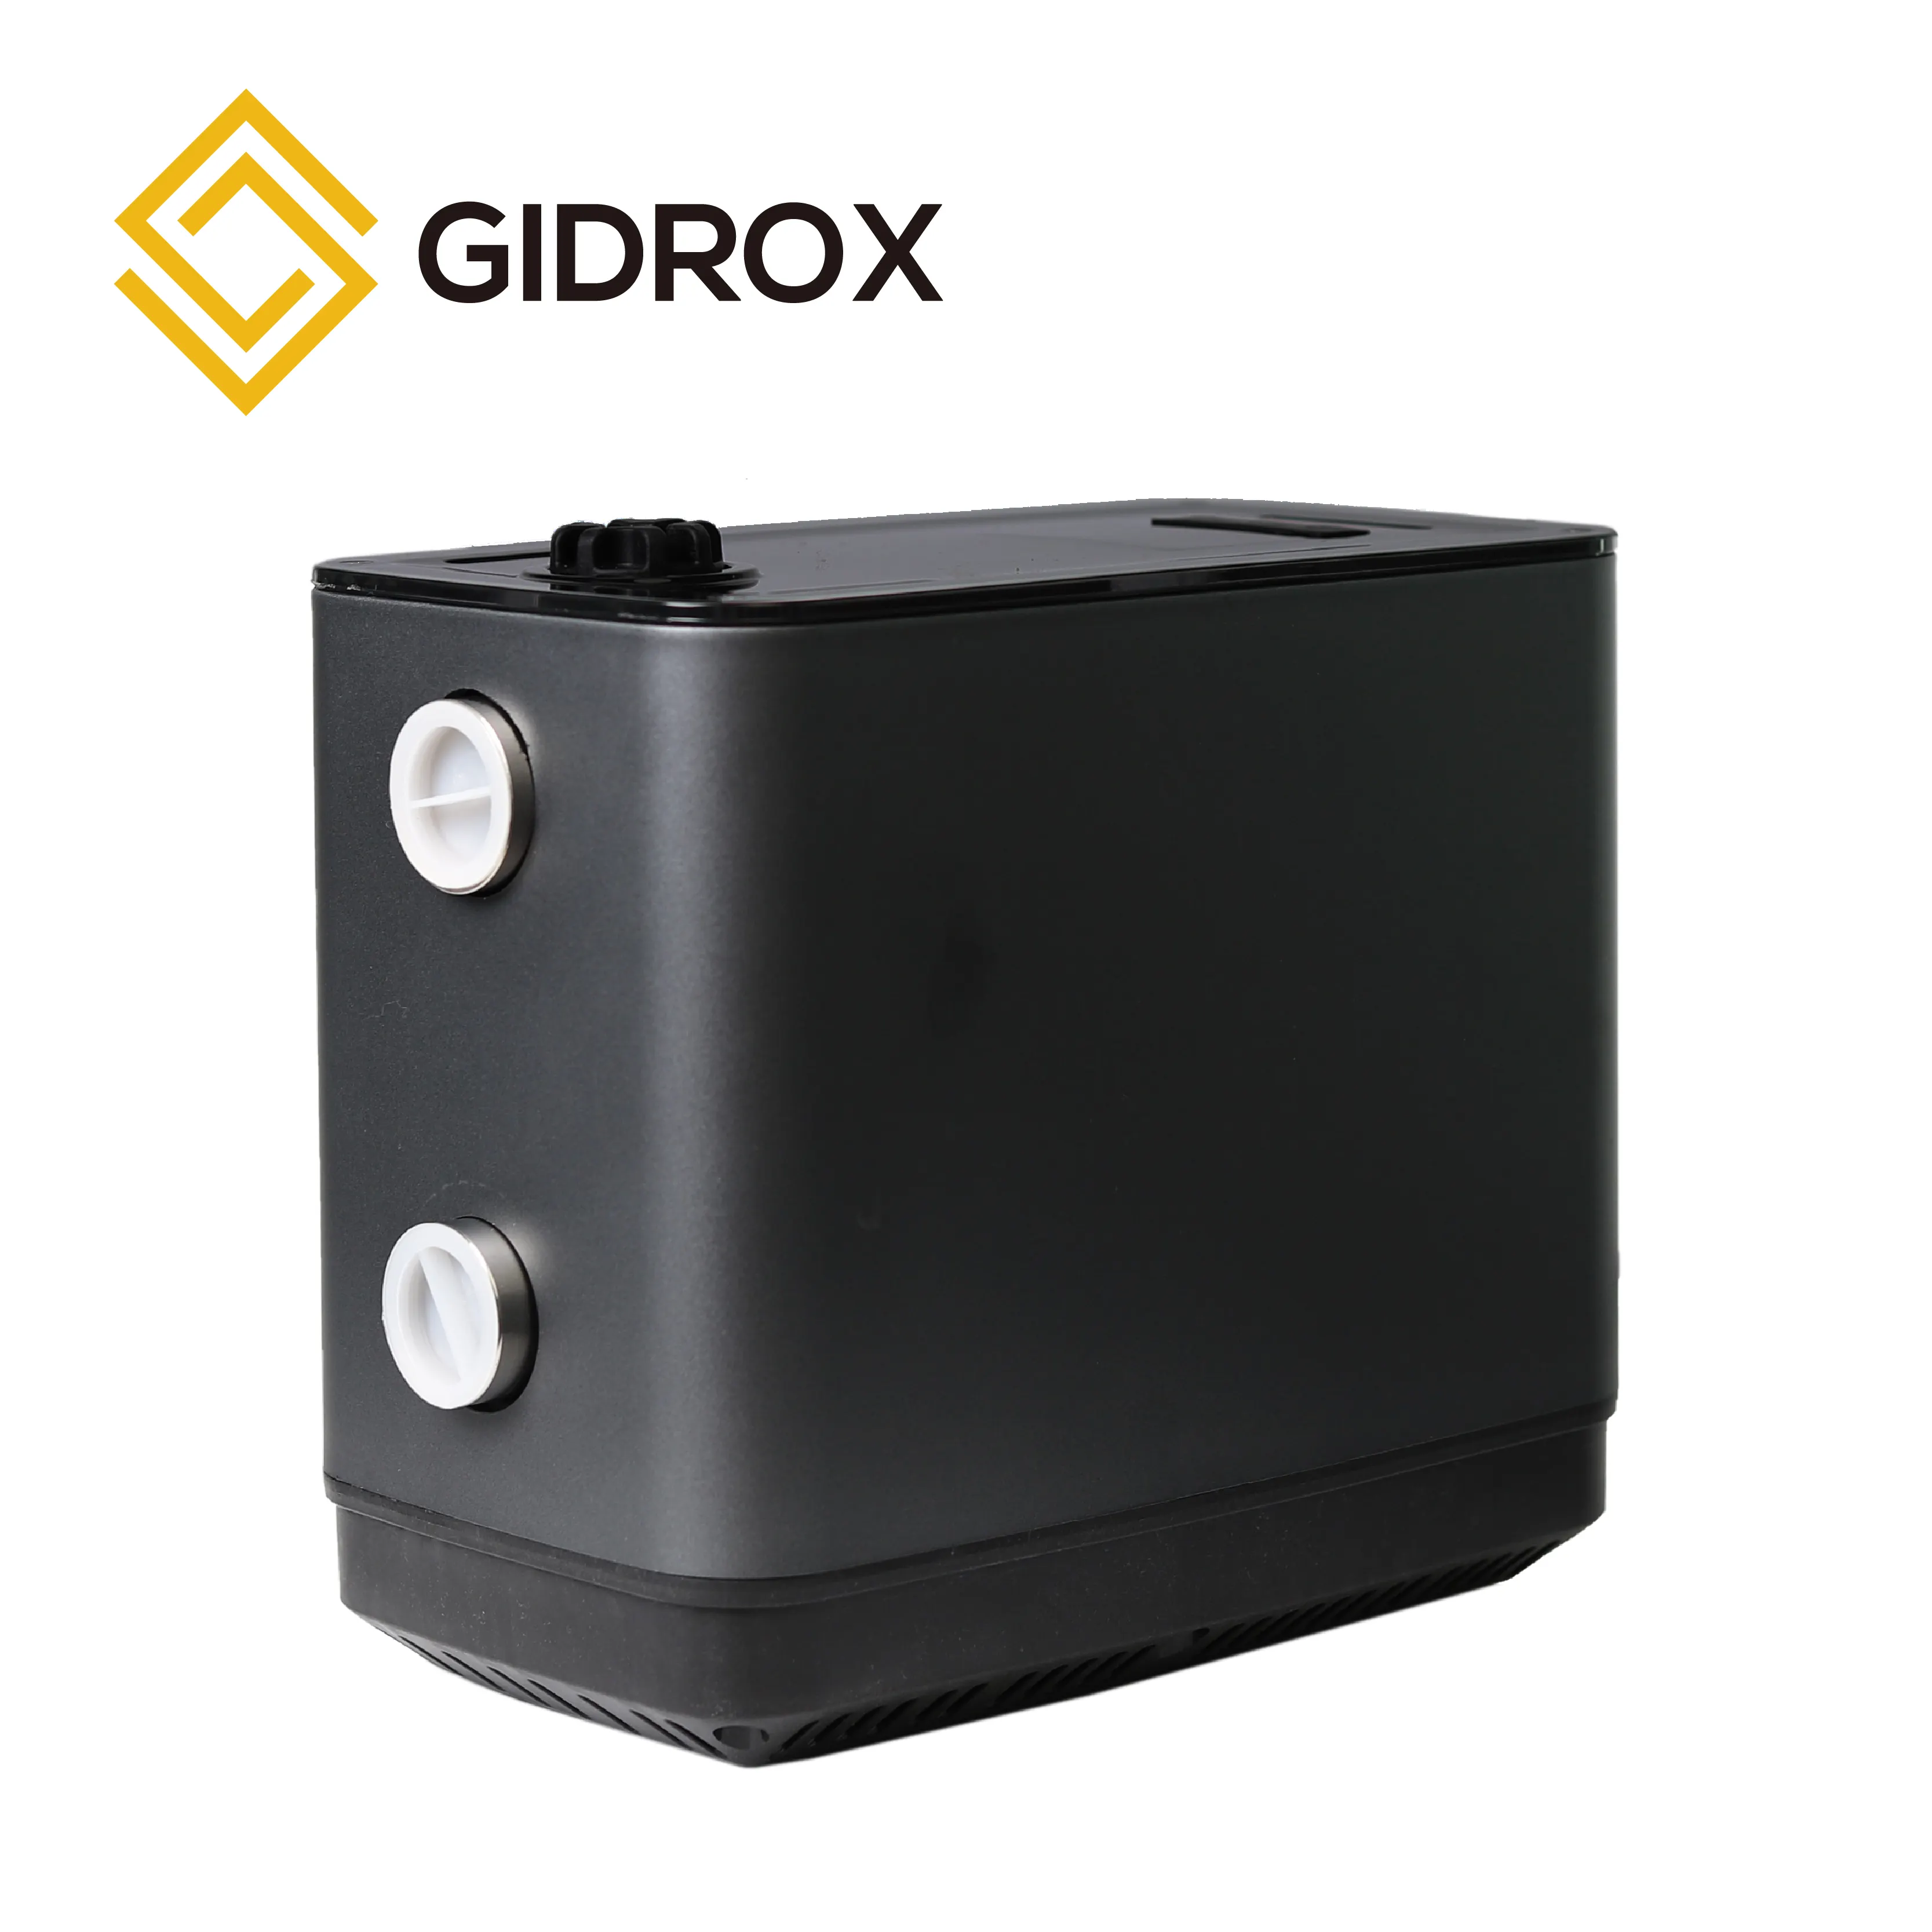 Gidrrox booster pompa per uso domestico sistema di Booster a velocità variabile intelligente pompa a magneti permanenti con autoadescamento